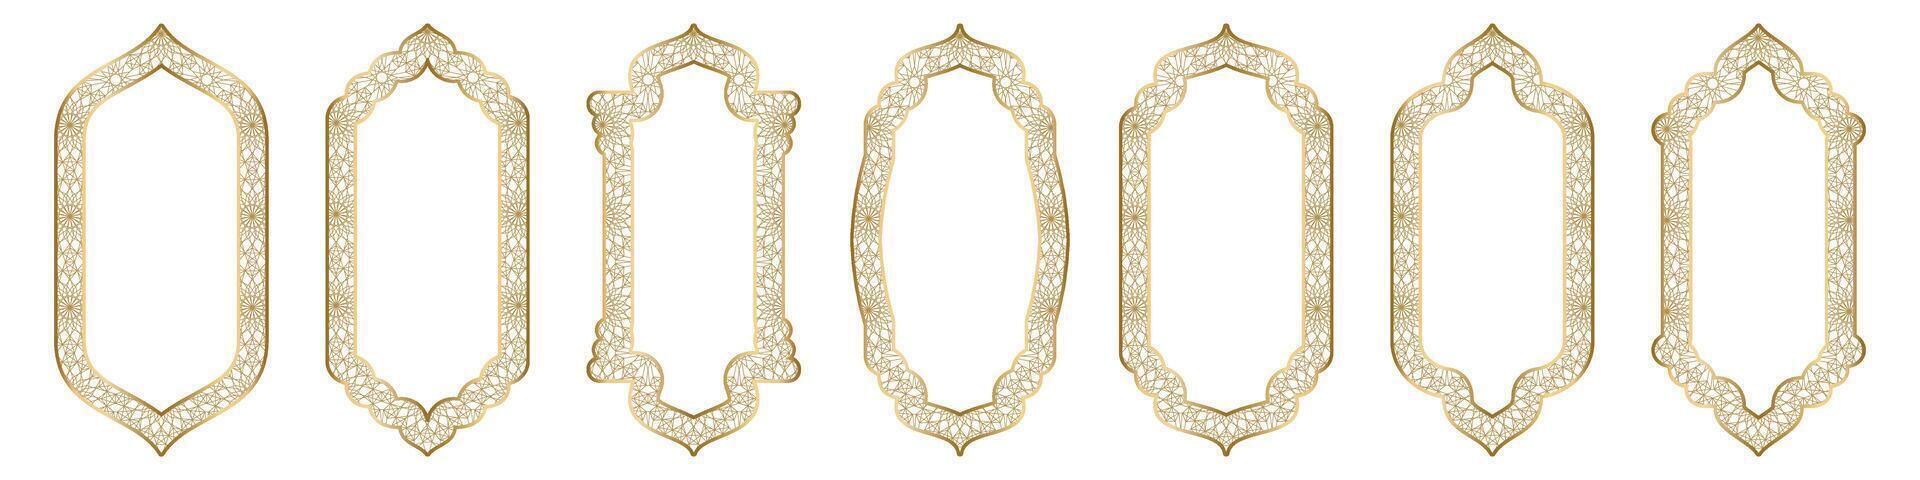 oro ornamental arco marco forma islámico puerta o ventana con geométrico girikh patrón, silueta Arábica arco. lujo conjunto en oriental estilo. marcos en Arábica musulmán diseño para Ramadán kareem vector